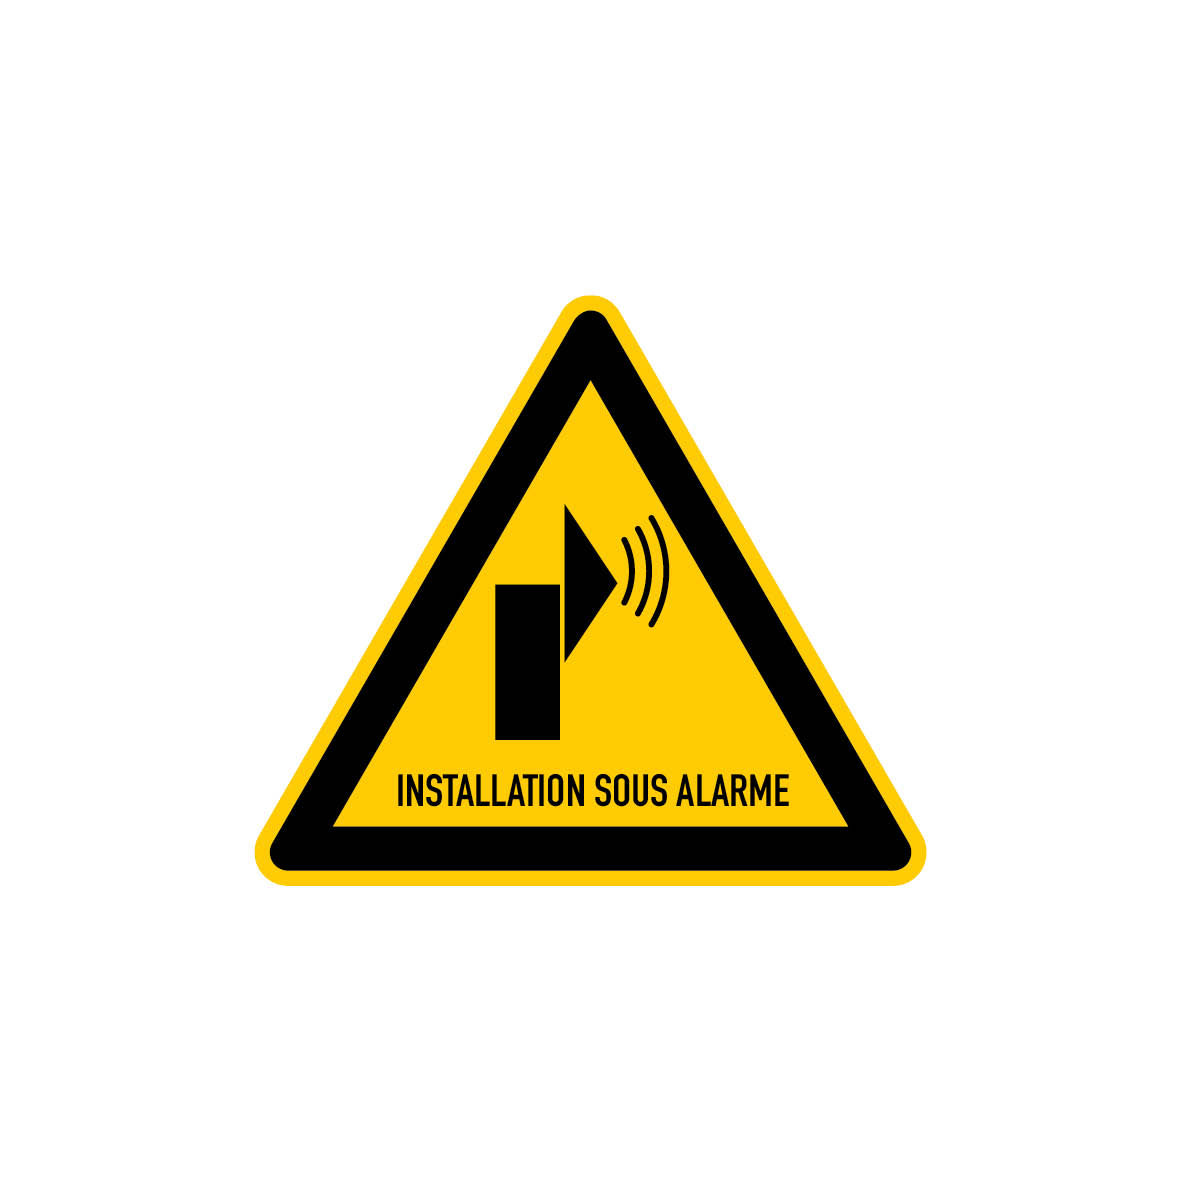 6.W-952 Warnung vor Alarm, Warnzeichen, Praxisbewährt, französisch